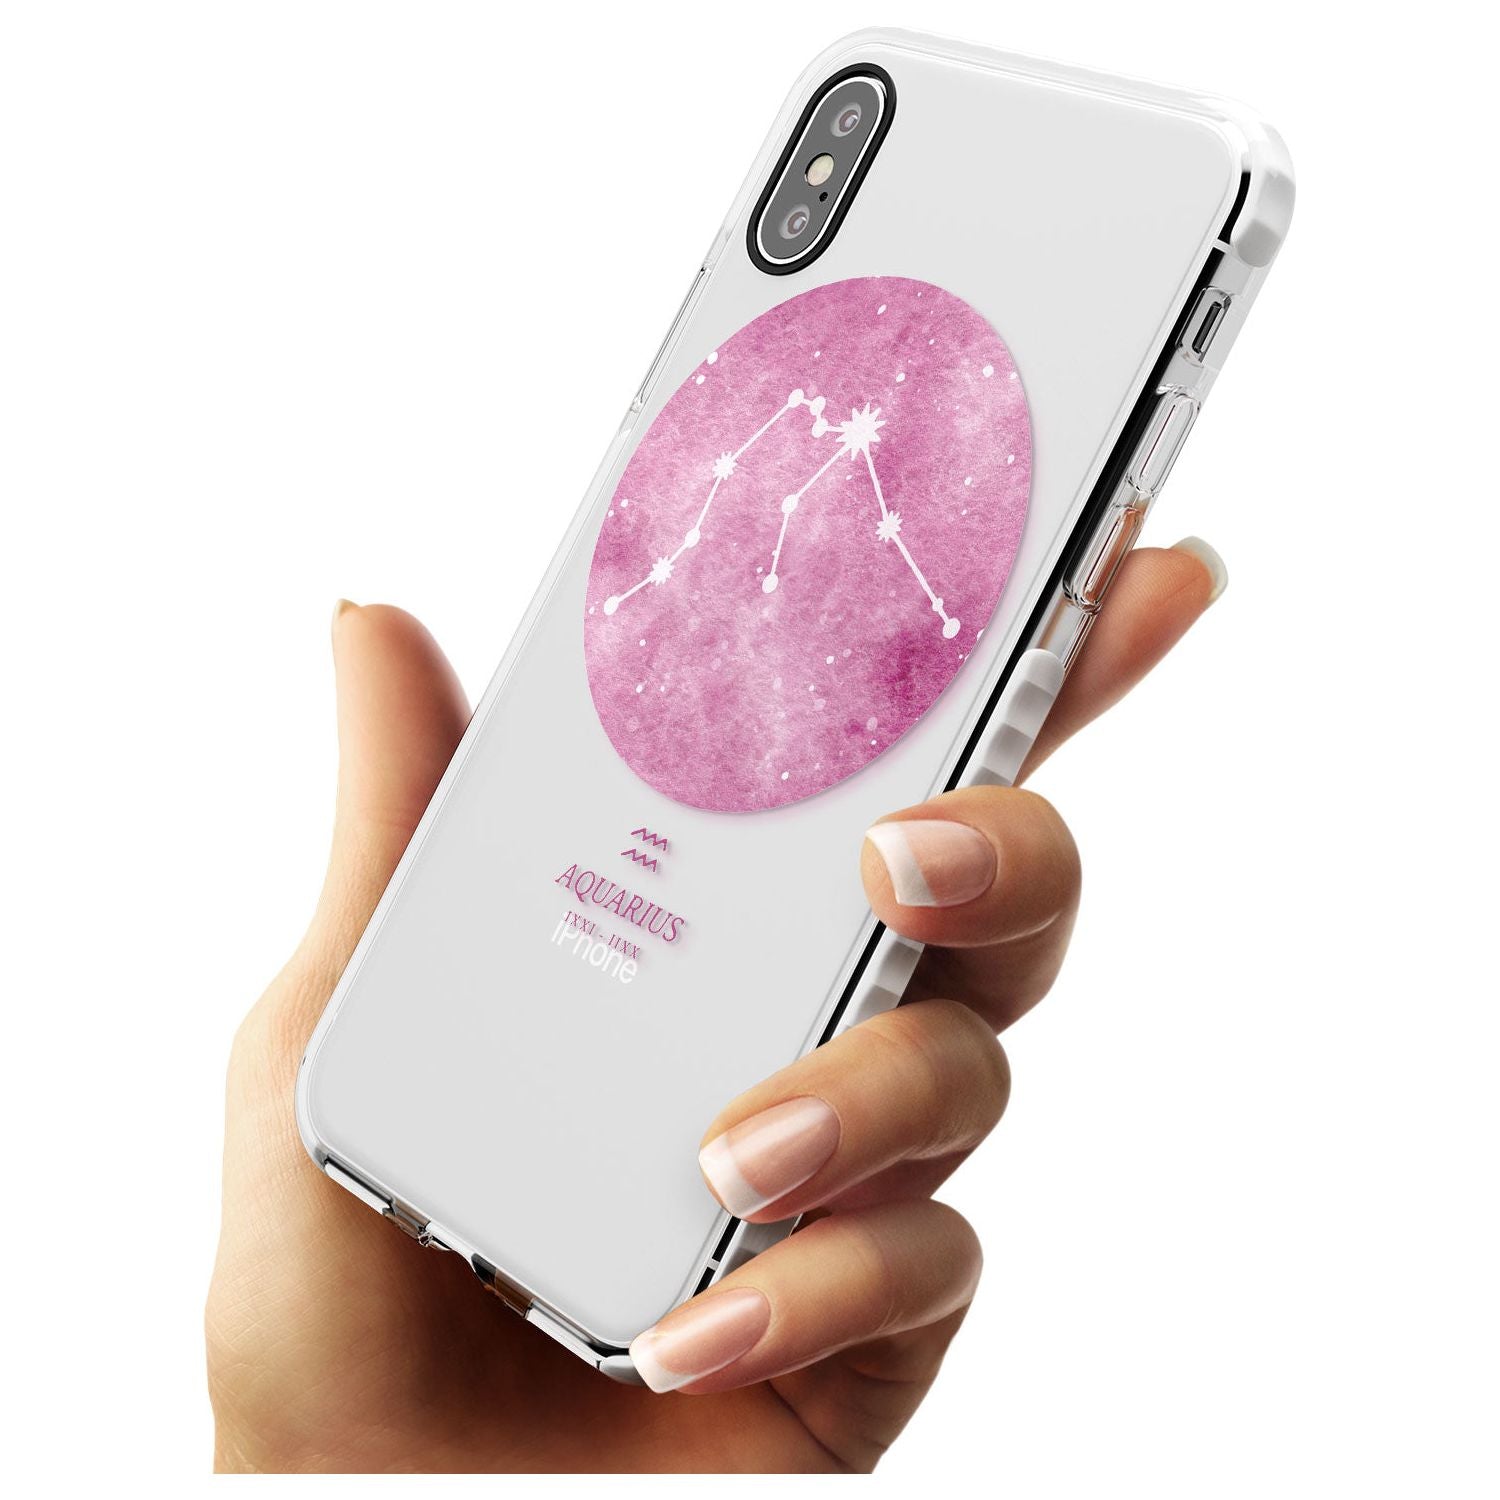 Aquarius Zodiac Transparent Design - Pink Impact Phone Case for iPhone X XS Max XR